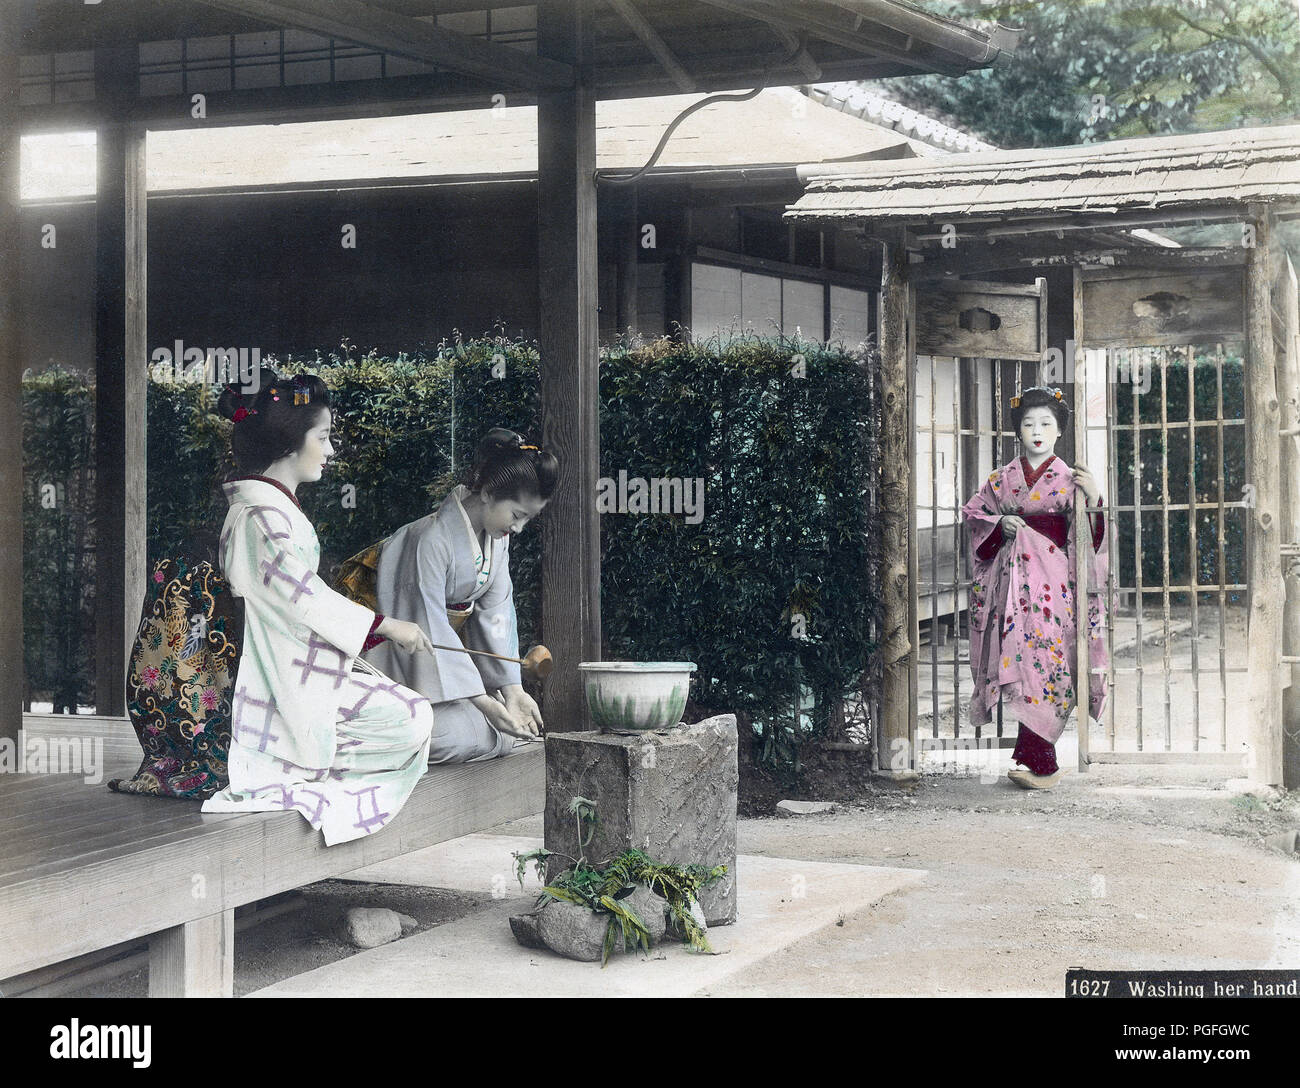 [ C. 1890 Giappone - Lavaggio mani ] - una donna in kimono utilizza un Hishaku (siviera) per spruzzare acqua sulle mani di un'altra donna che sta lavando le mani. Le due donne sono seduti sulla veranda di una casa privata. Un terzo donna entra nel giardino attraverso il cancello. Lavaggio delle mani (Temizu) è un importante rituale di purificazione durante l'inserimento di sacrario scintoista motivi, ma è stato anche fatto al momento di entrare in una casa privata. Xix secolo albume vintage fotografia. Foto Stock